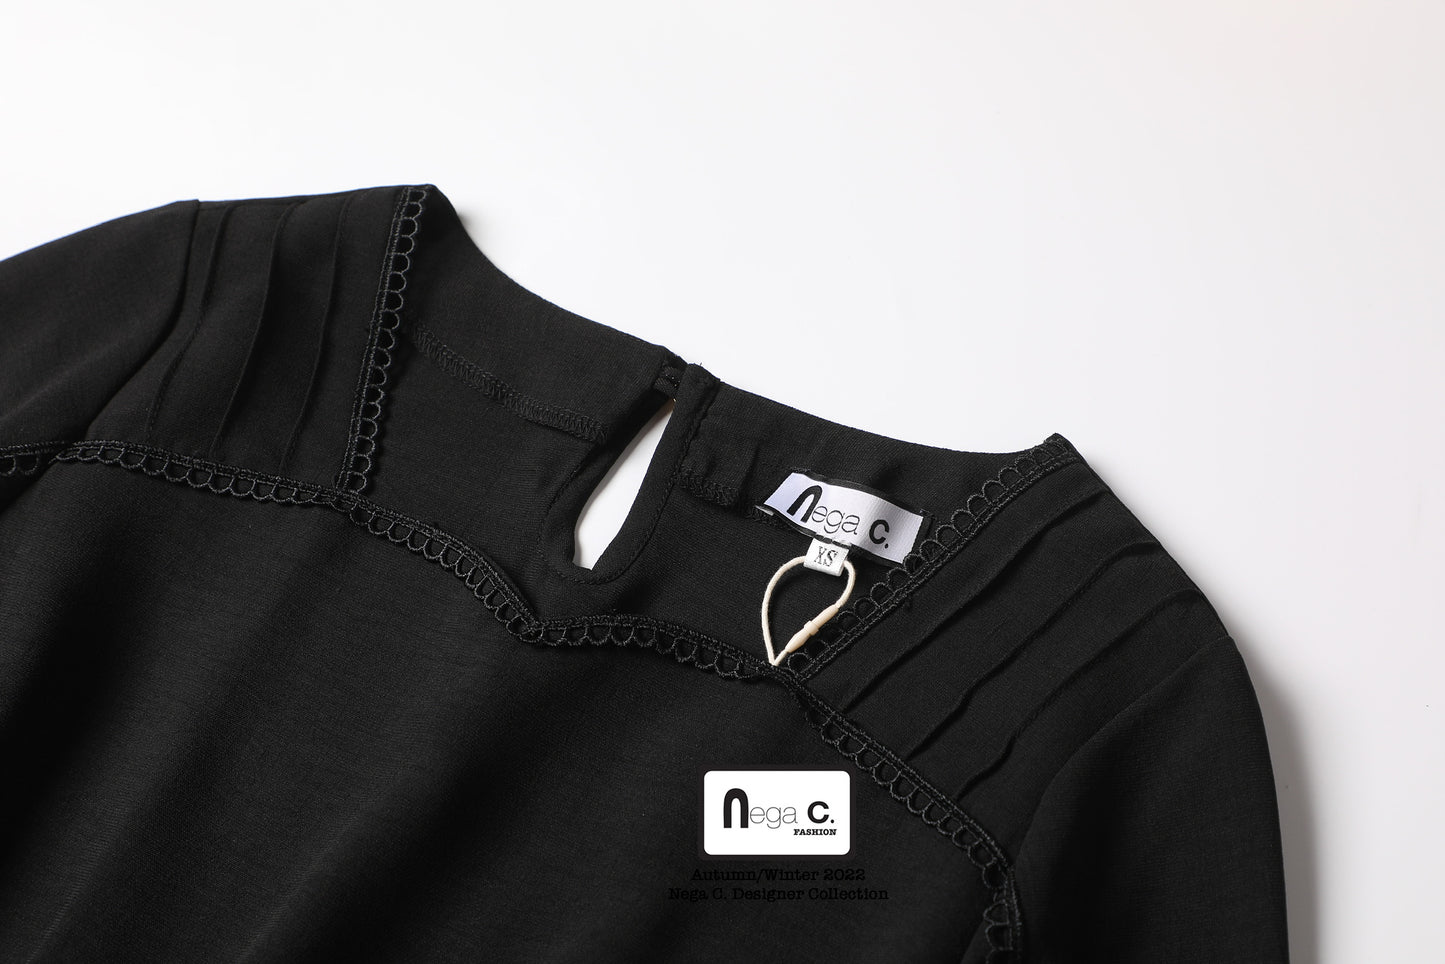 Nega C. 心型領不對稱荷業邊束腰上衣|黑色|無彈|無裡襯